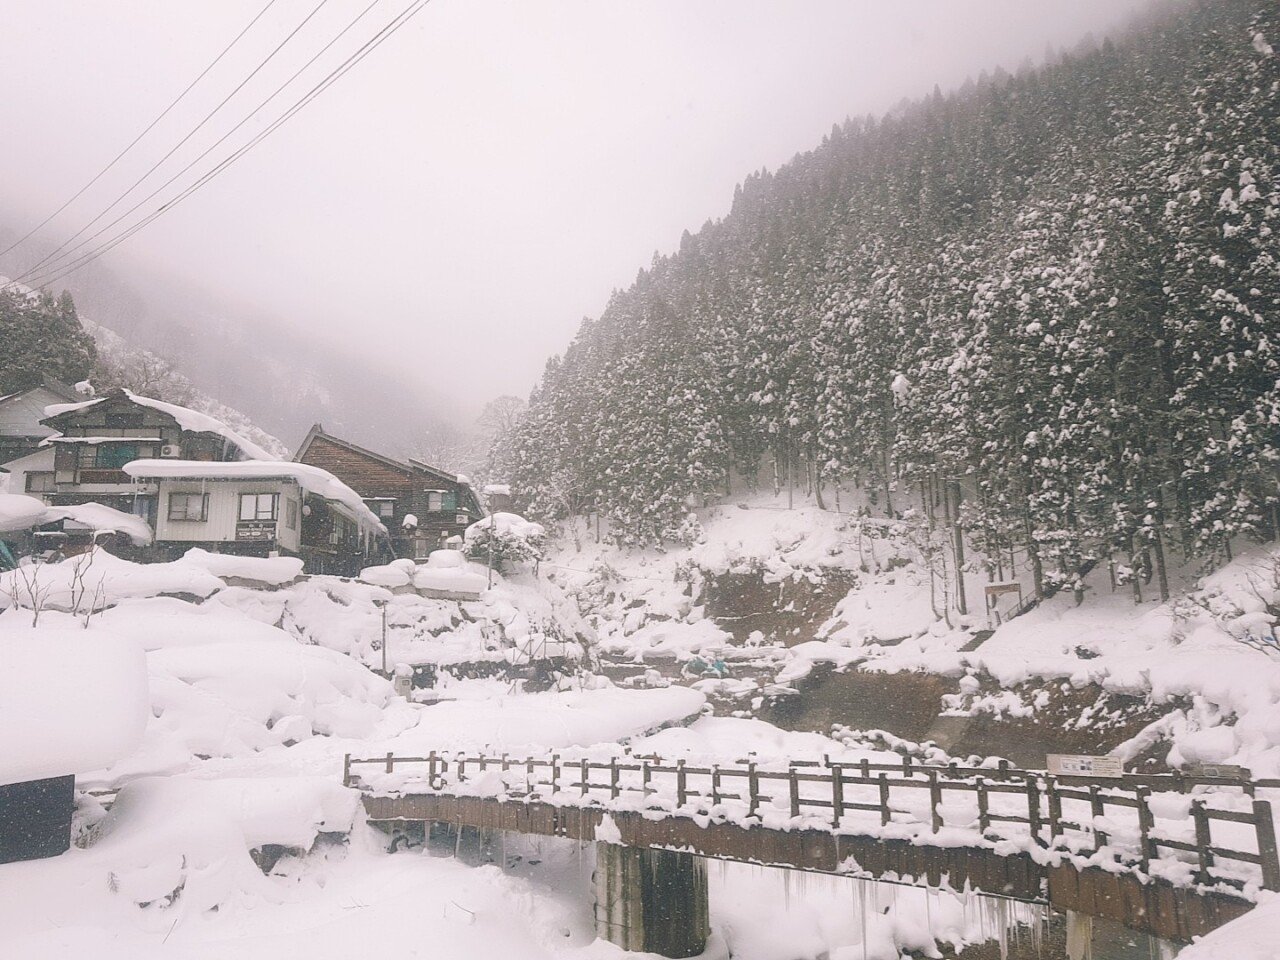 O2Cam_20190131135237.jpg 눈으로 덮인 겨울 니가타&나가노 여행기(2) (스압?)